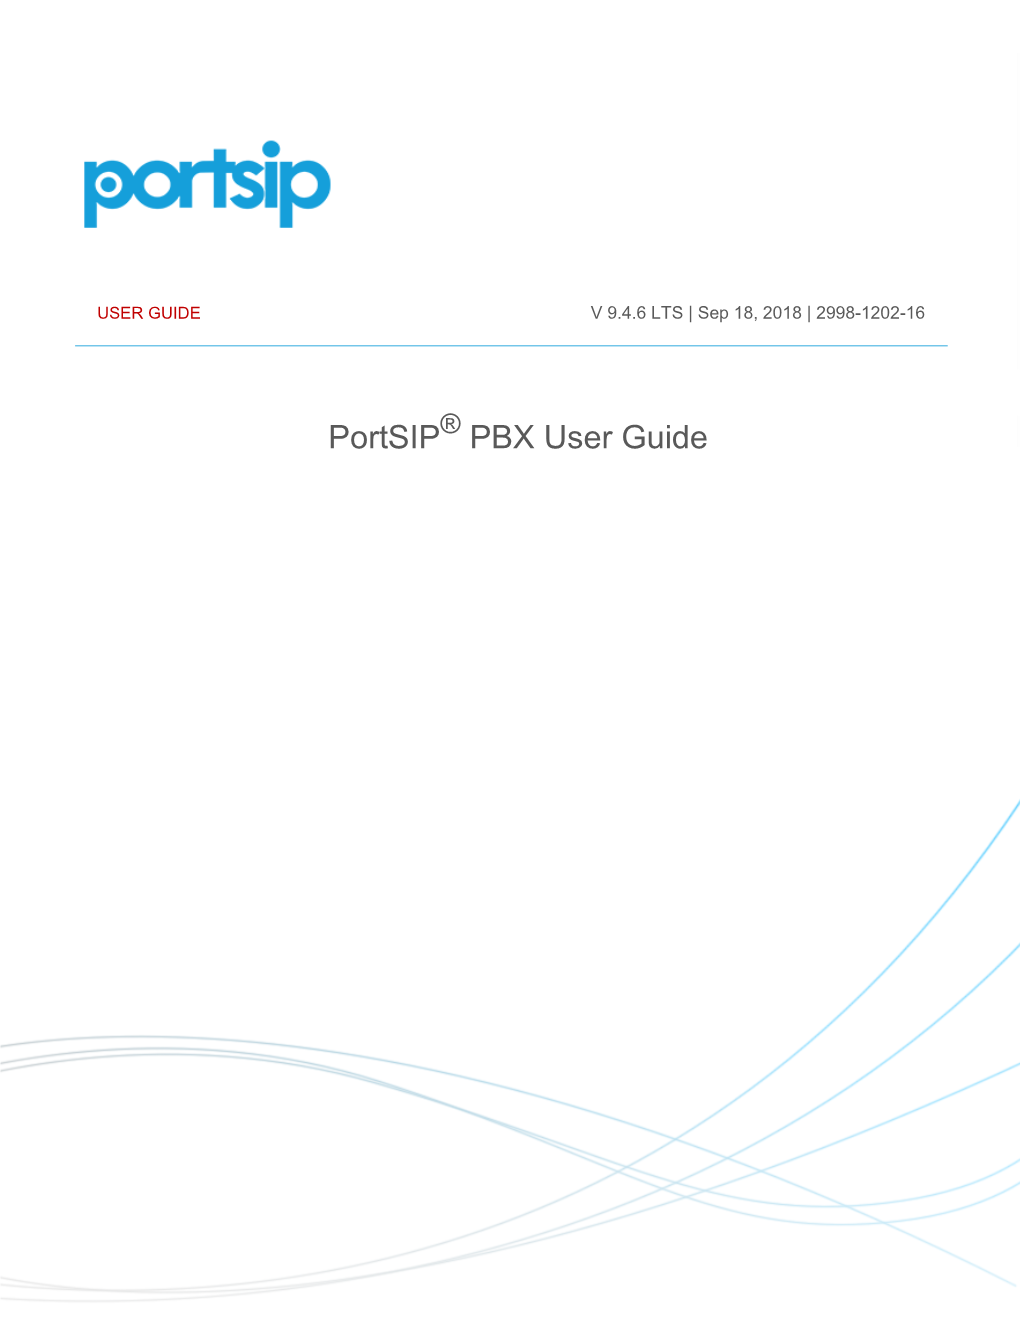 Portsip PBX User Guide